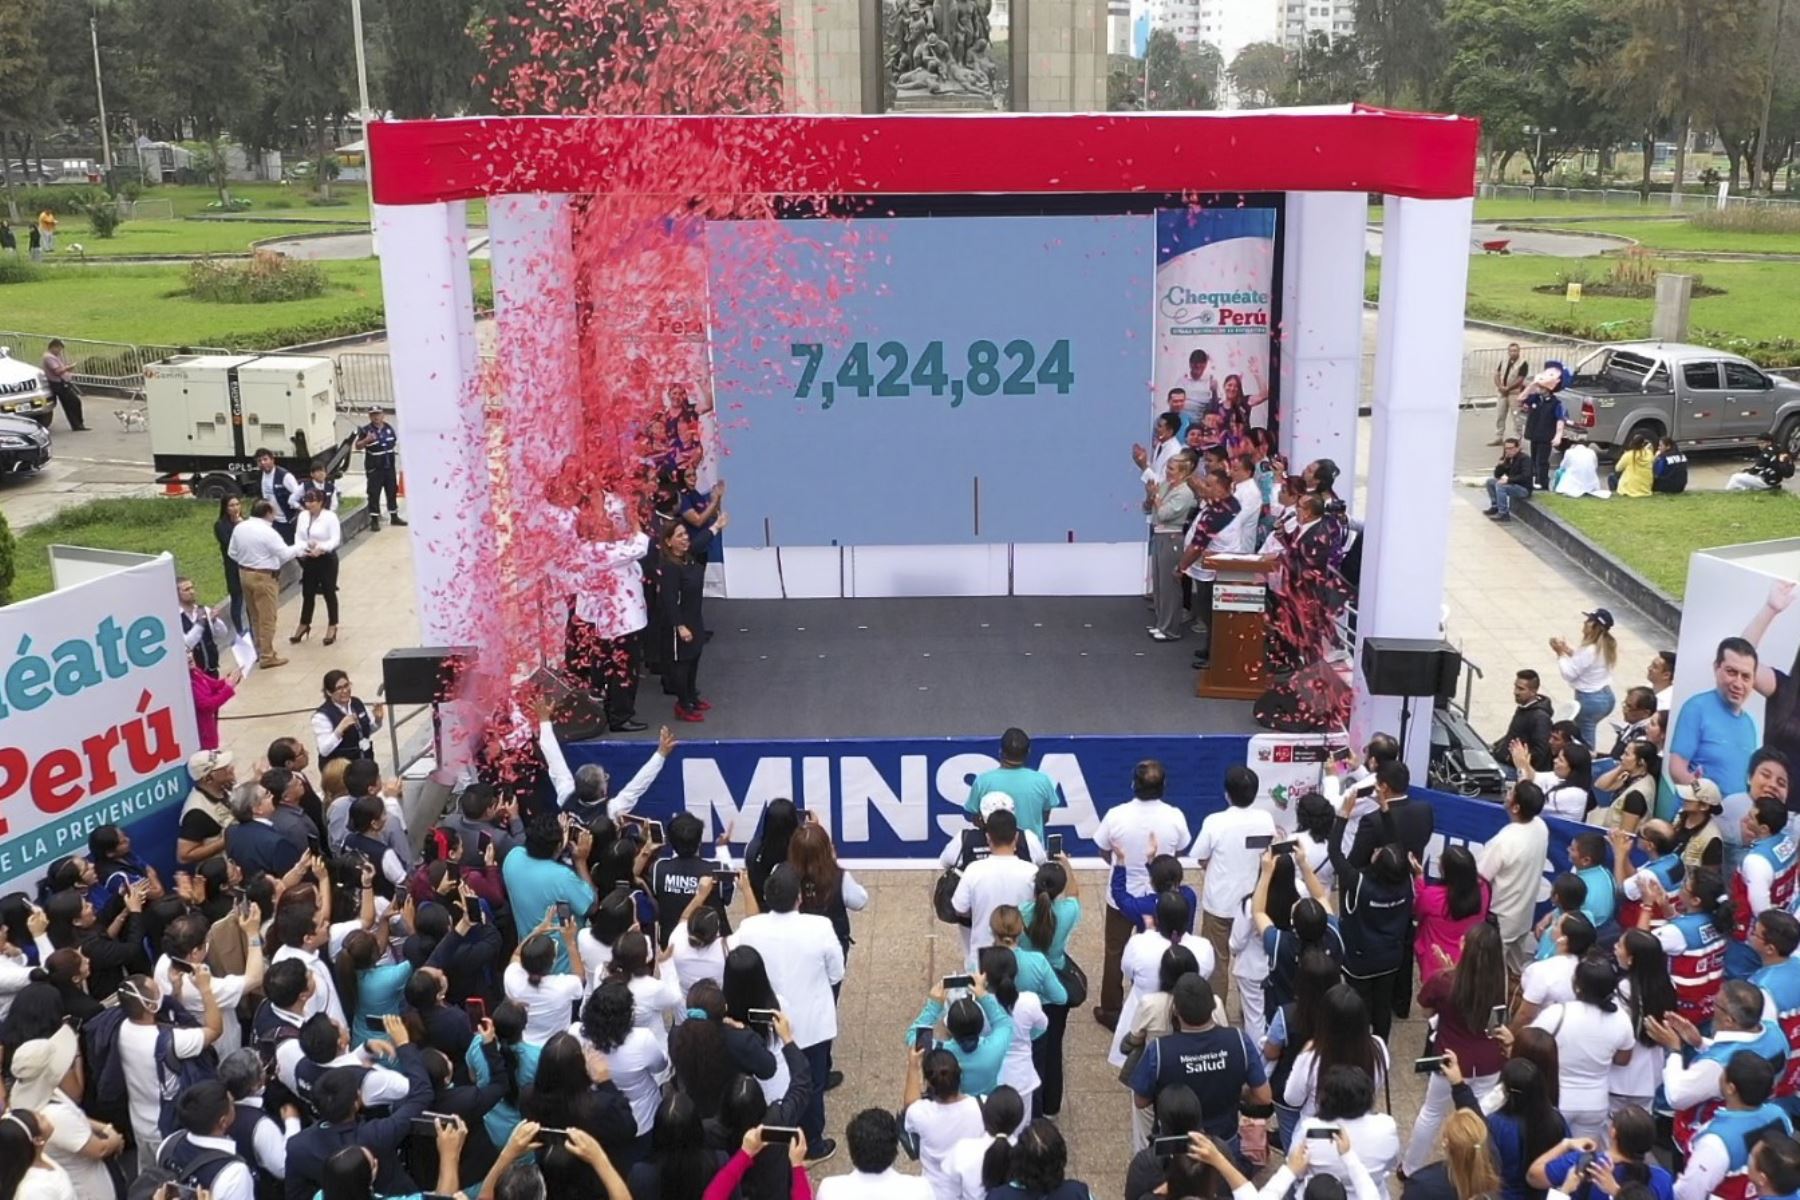 El Ministerio de Salud (Minsa) brindó un total de 7 424 824 de atenciones durante la Semana Nacional de la Prevención “Chequéate Perú”, cifra que supera la meta establecida para la jornada que se realizó desde el pasado lunes 15 y culminó el domingo 21 de mayo último.
Foto: ANDINA/MINSA